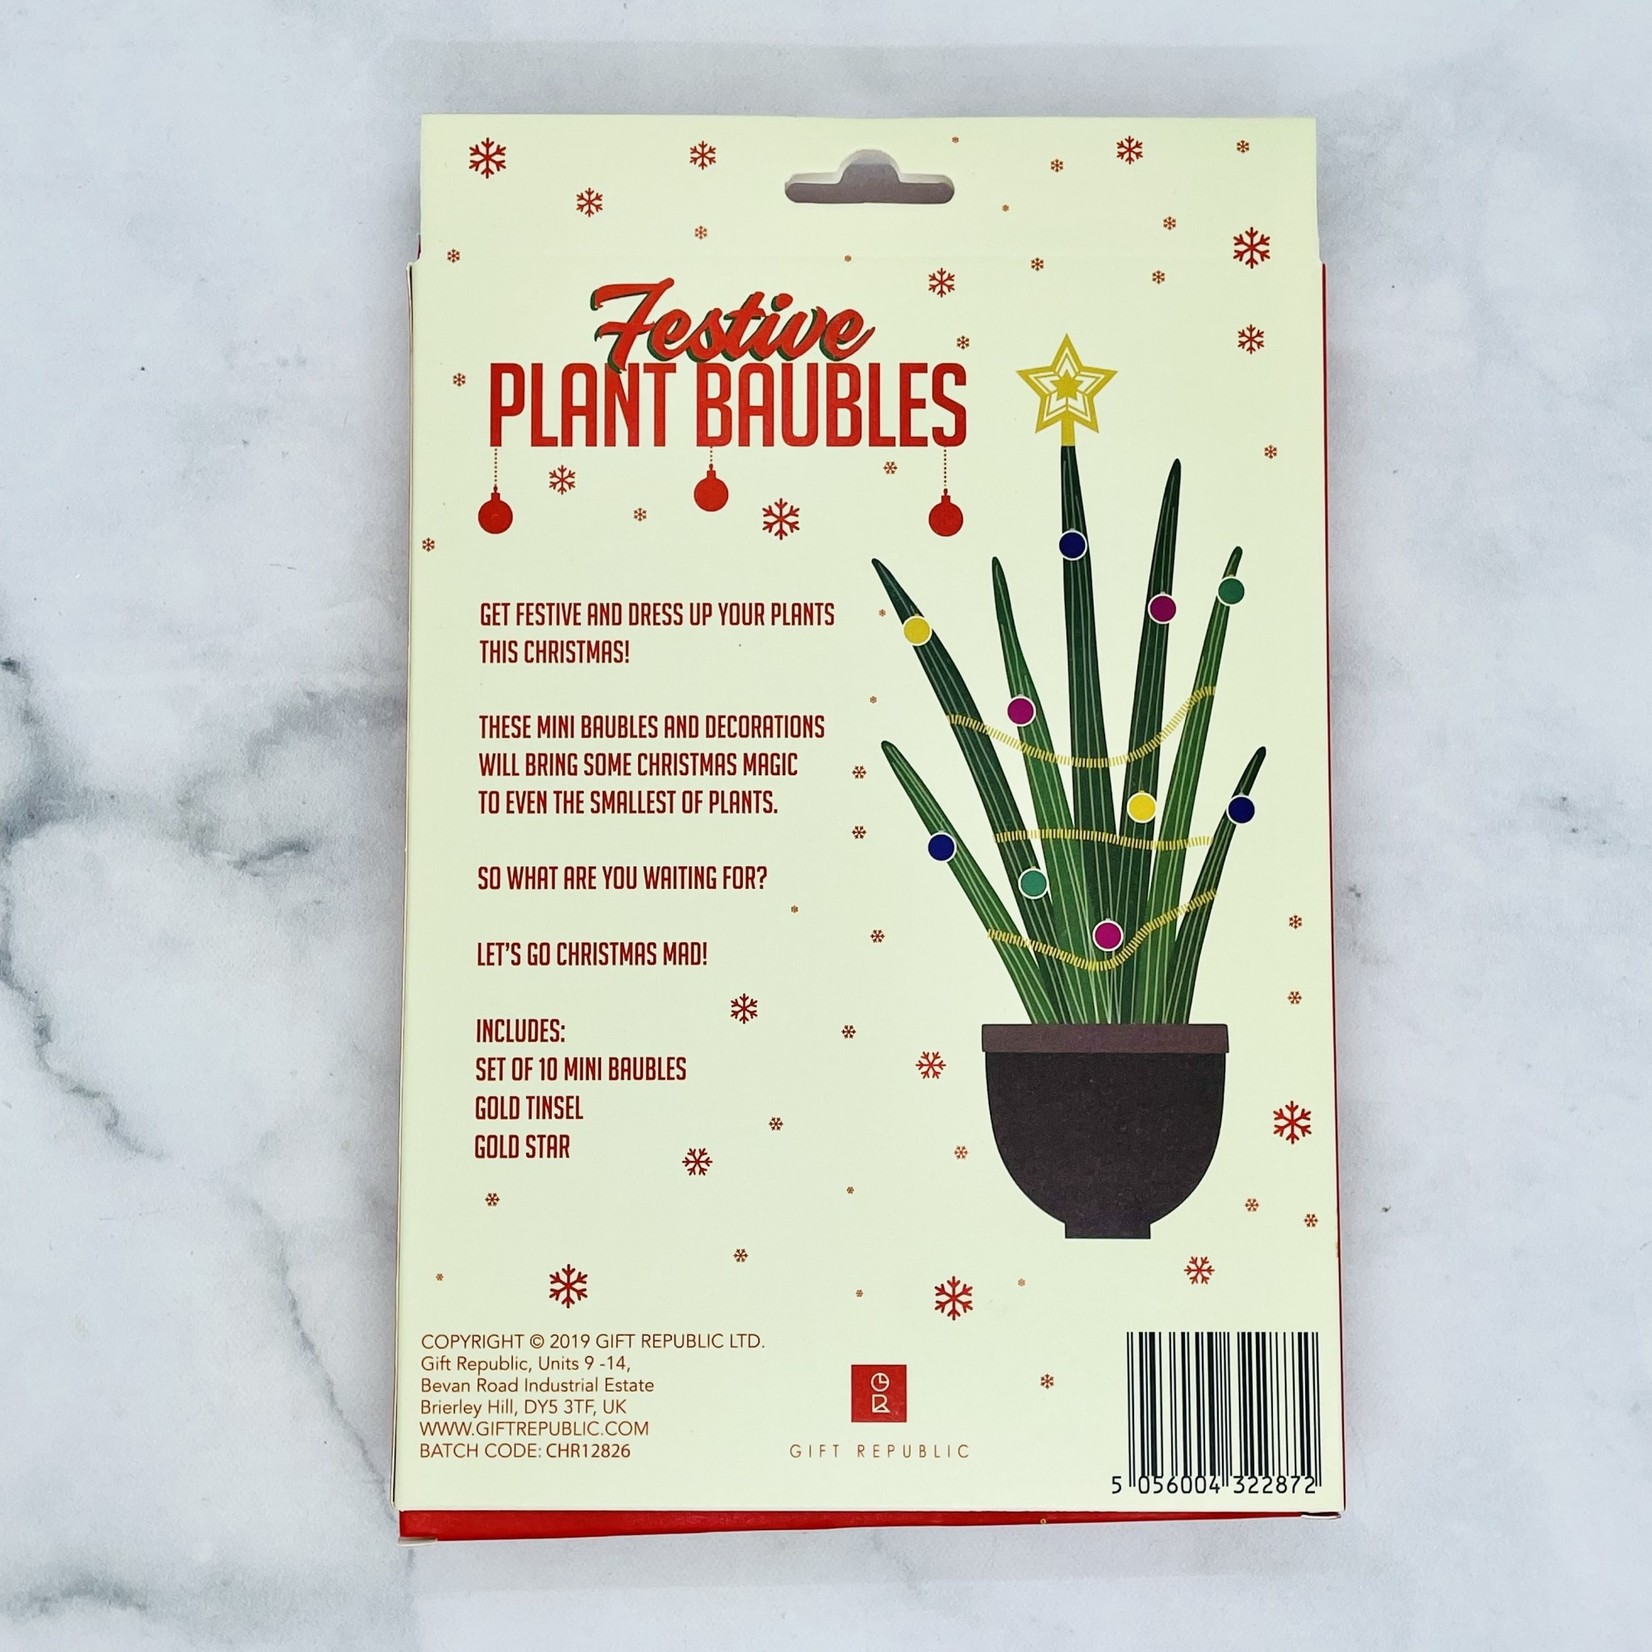 Gift Republic Festive Plant Baubles